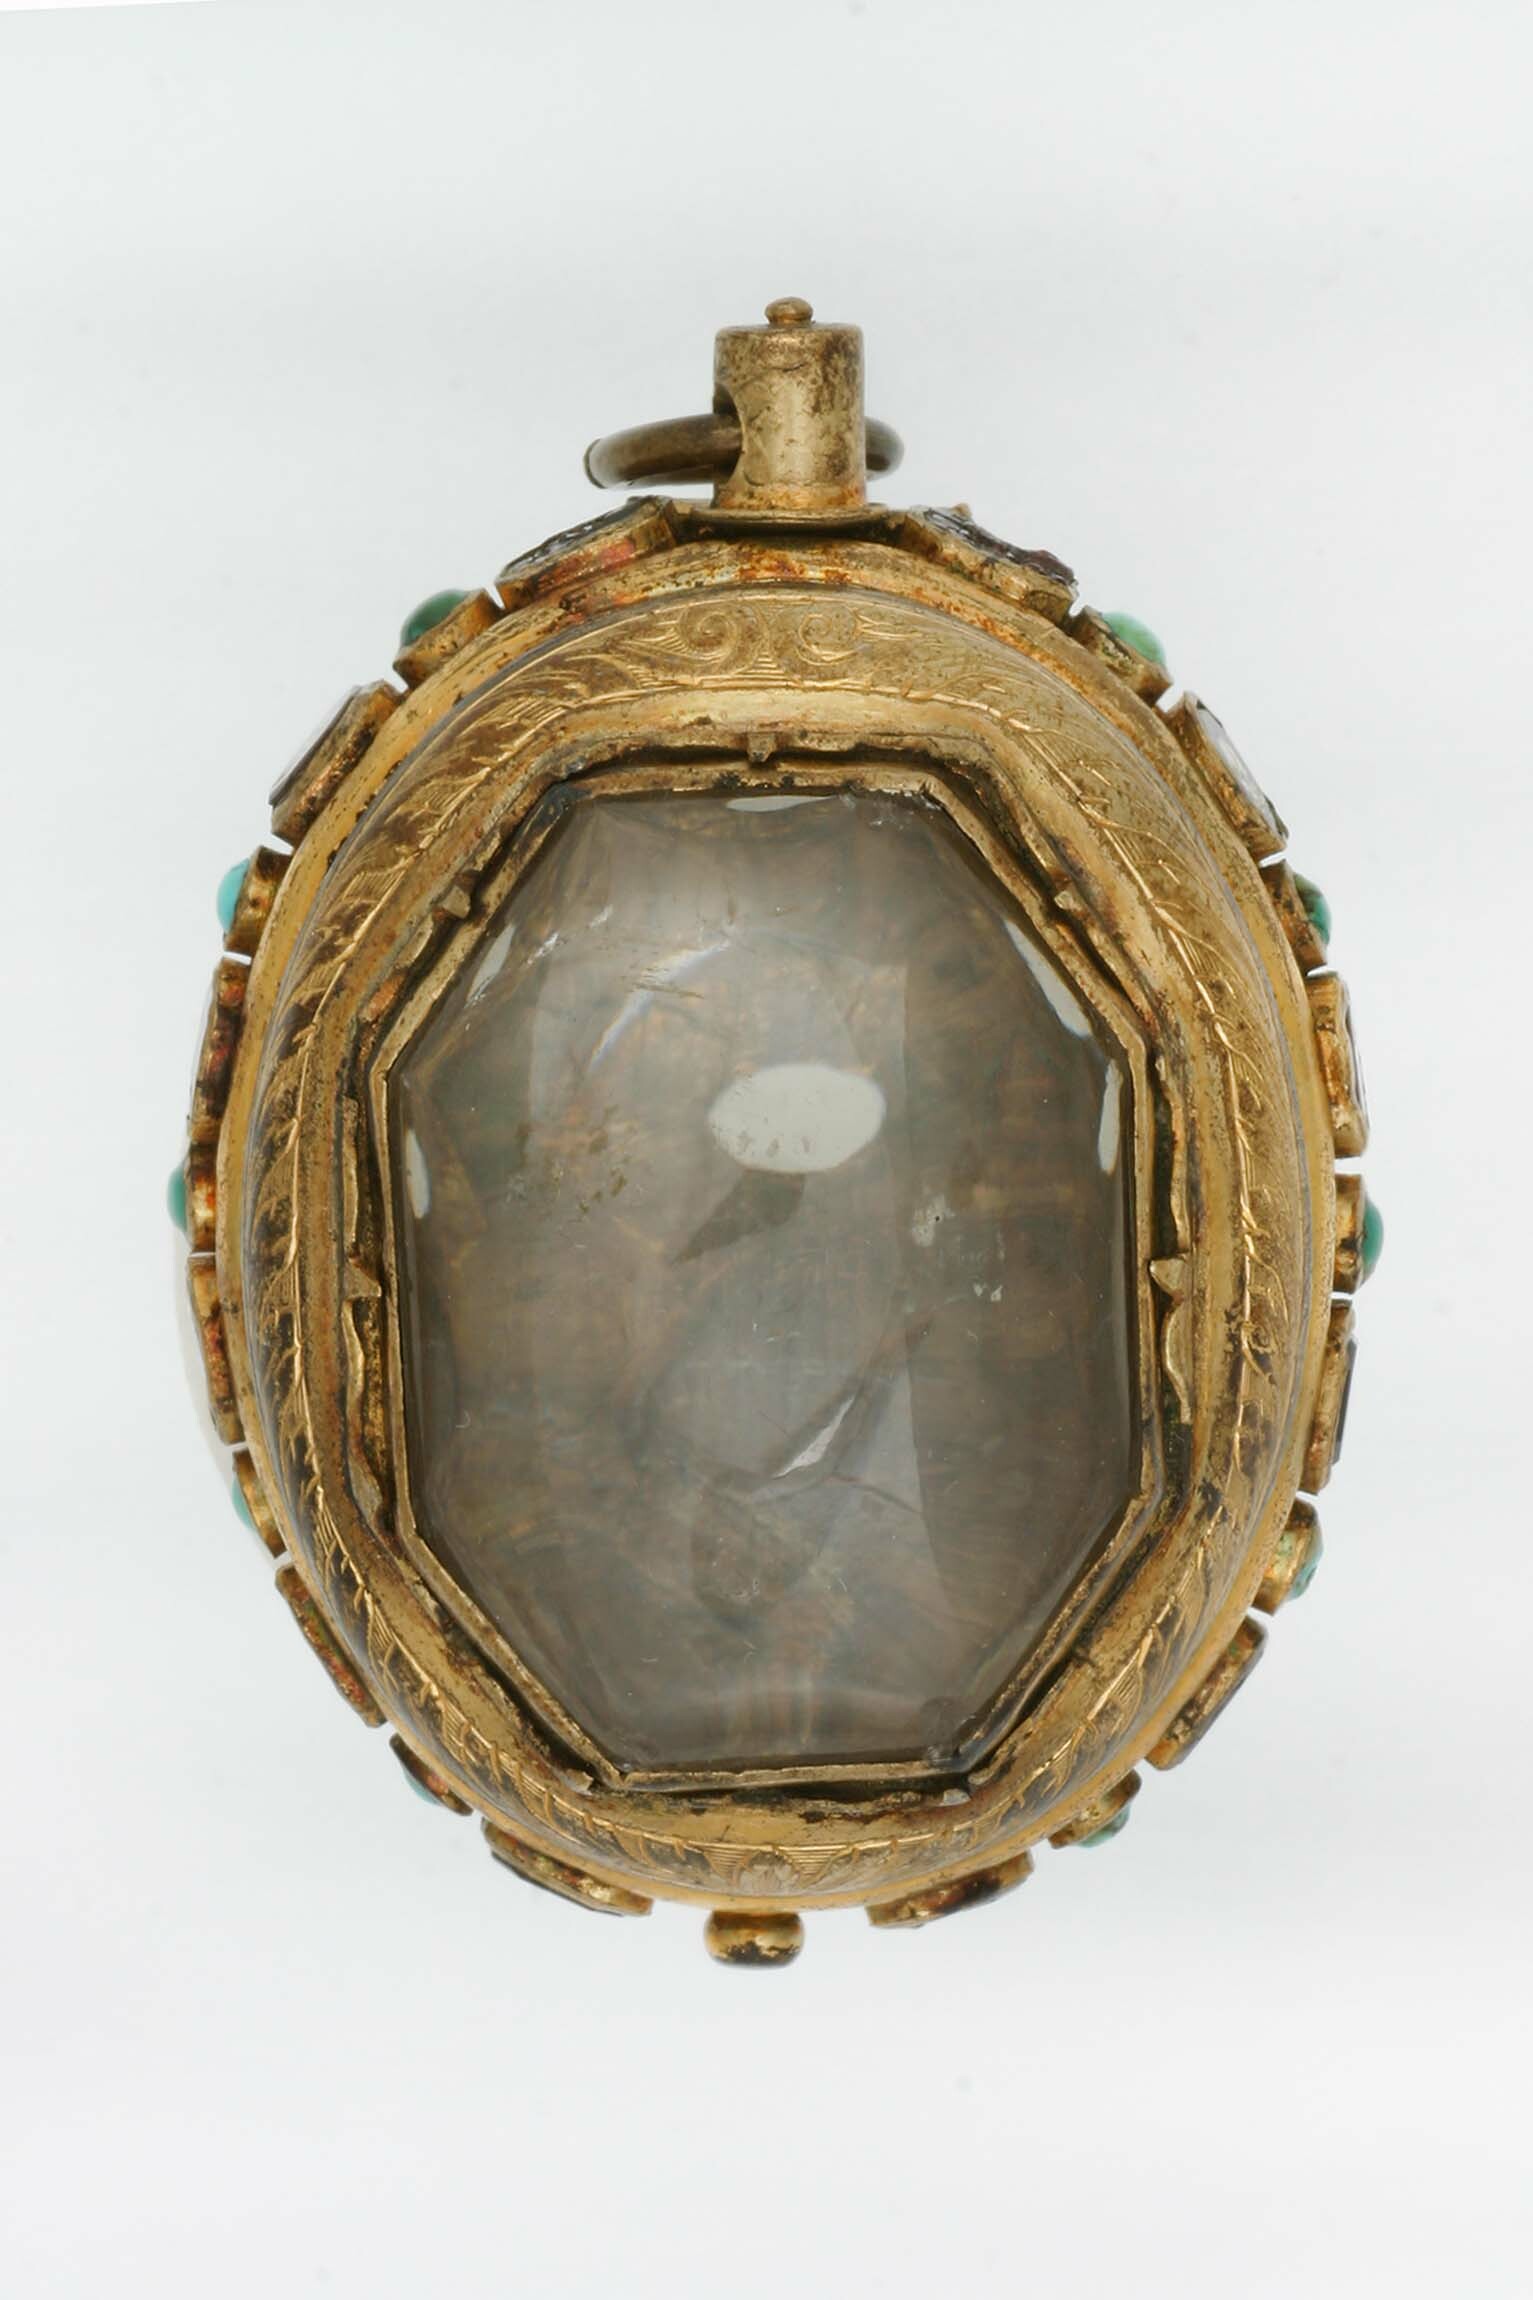 Gehäuse für Halsuhr, wohl Deutschland, um 1600 (Deutsches Uhrenmuseum CC BY-SA)